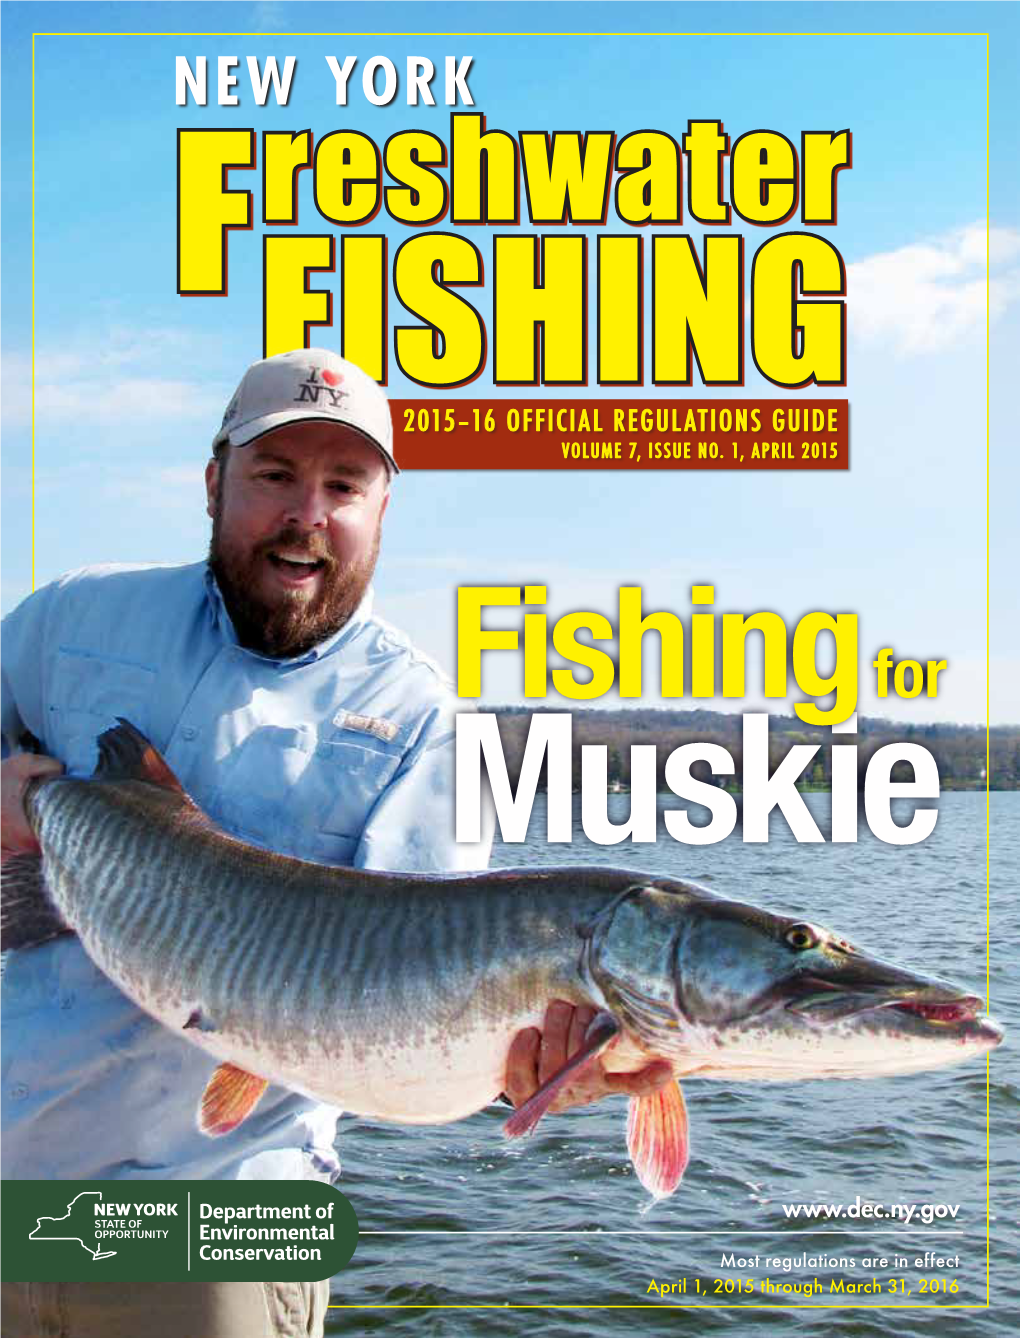 New York Freshwater Fishing Regulations Guide: 2015-16